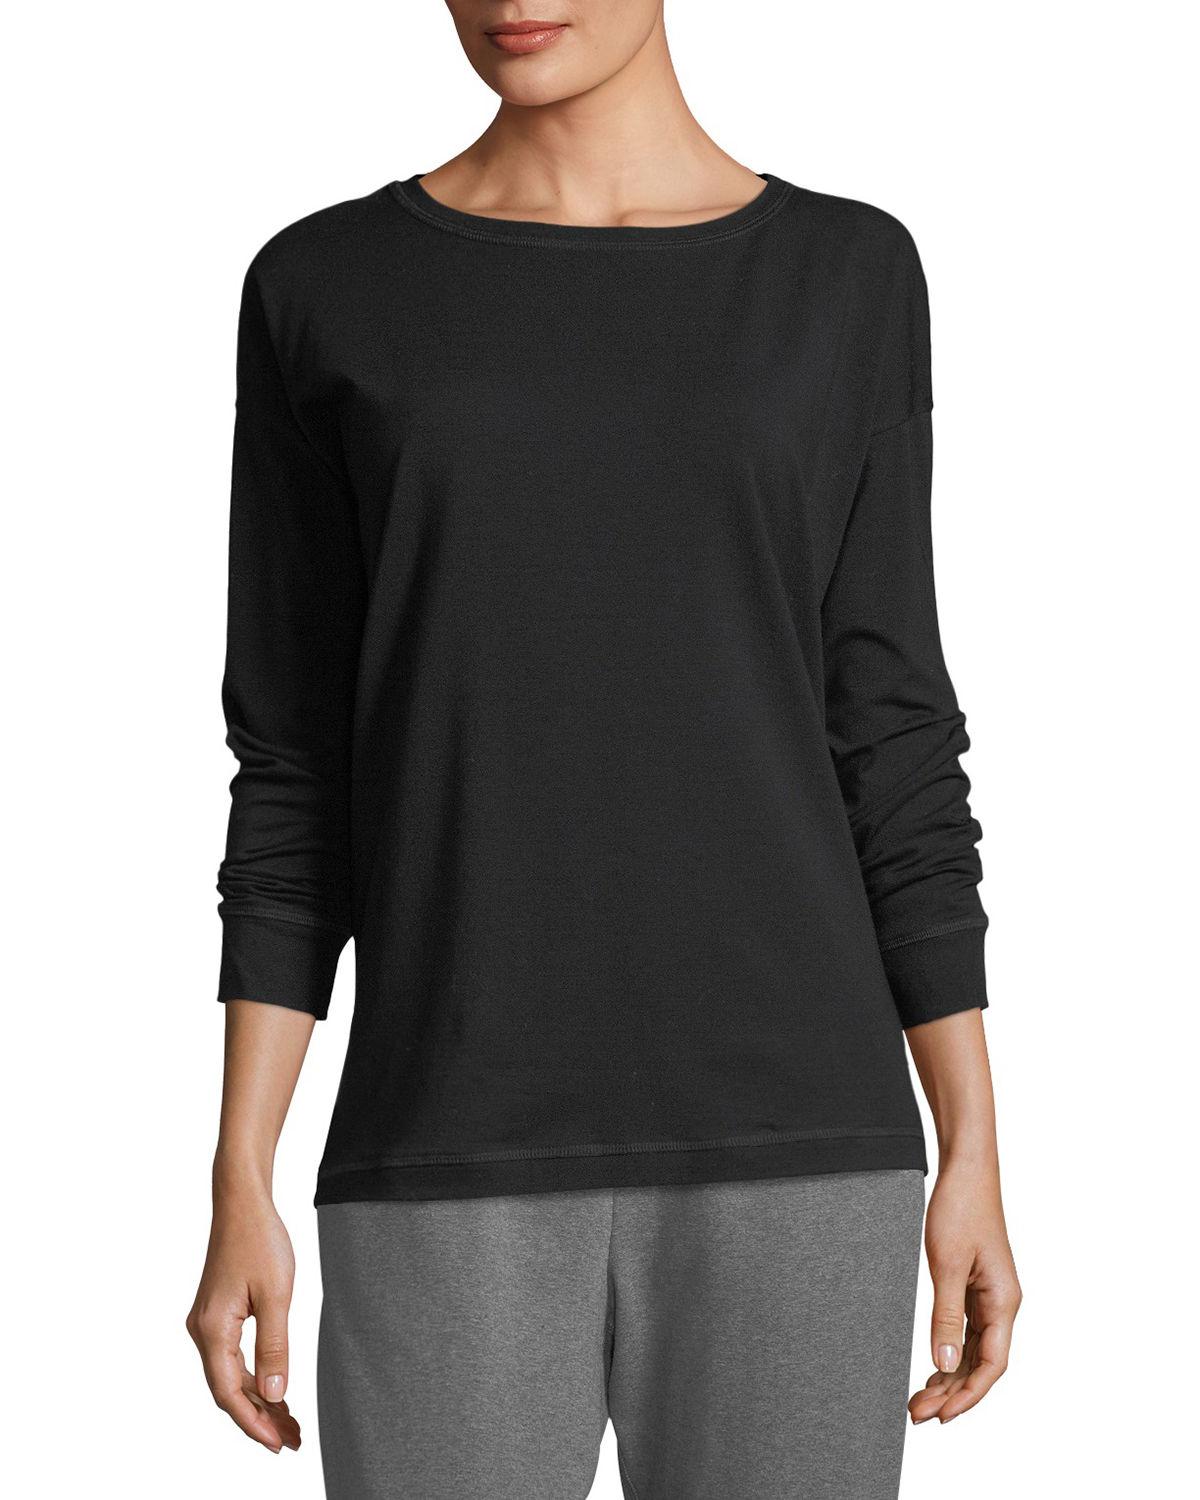 Eileen Fisher Stretch Jersey Sweatshirt Top Plus Size in Black - Lyst